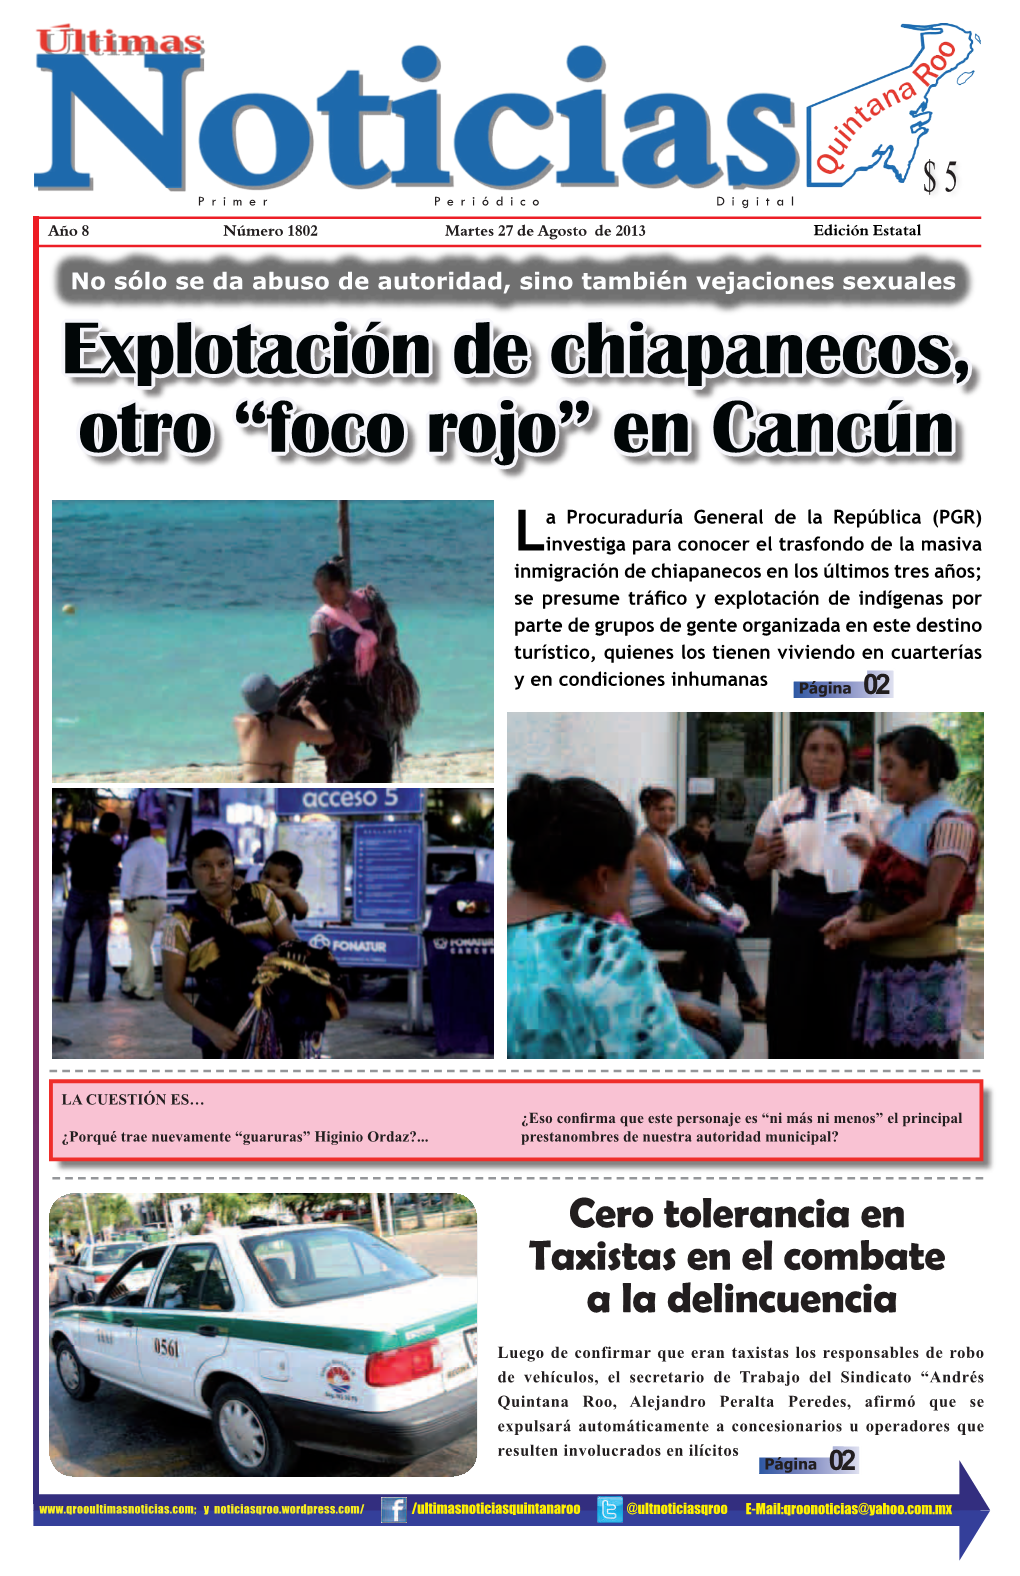 Explotación De Chiapanecos, Otro “Foco Rojo” En Cancún